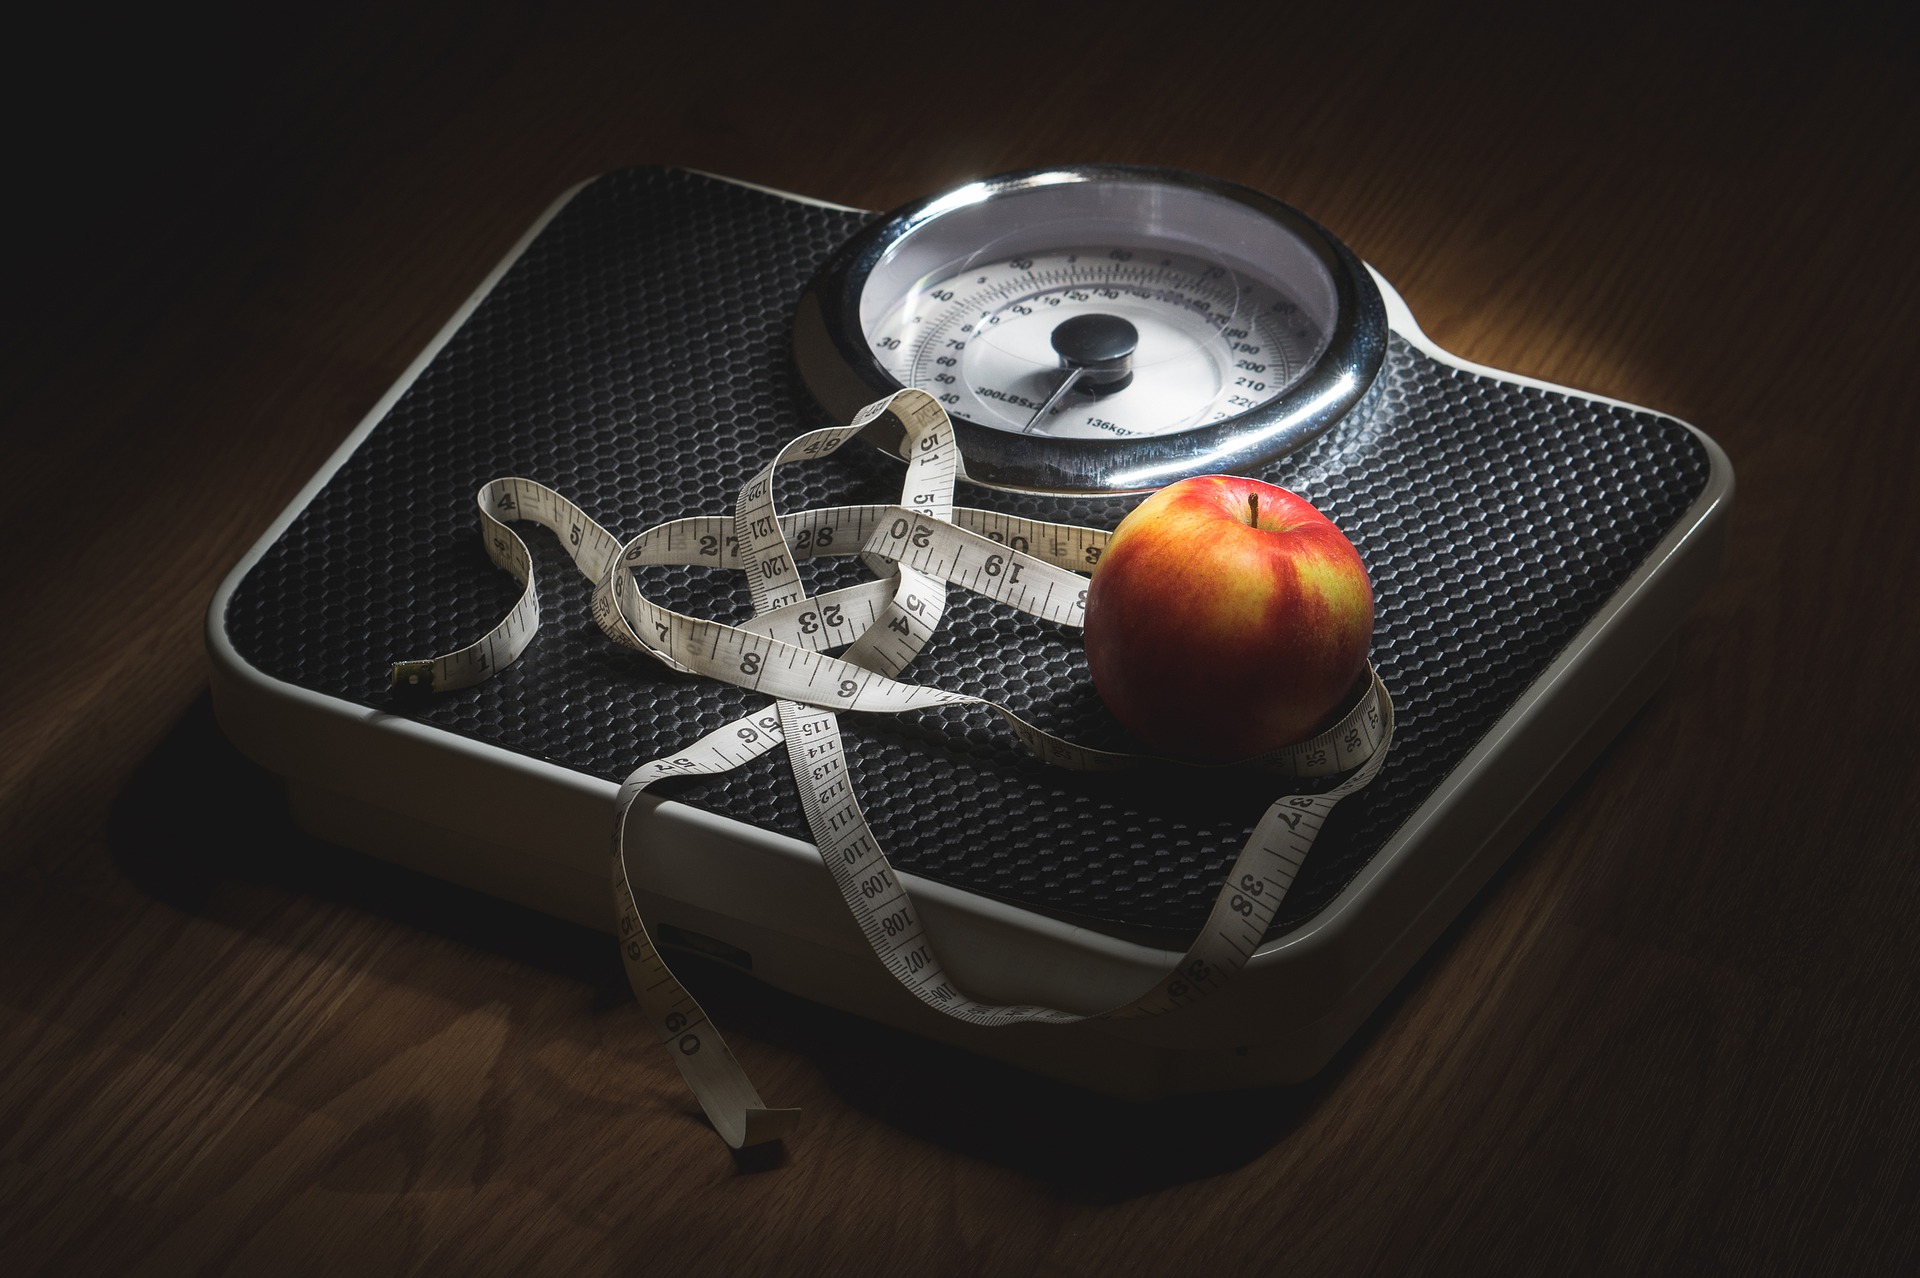 Curso Experto en el tratamiento dietético del sobrepeso y obesidad – Descuento para socios